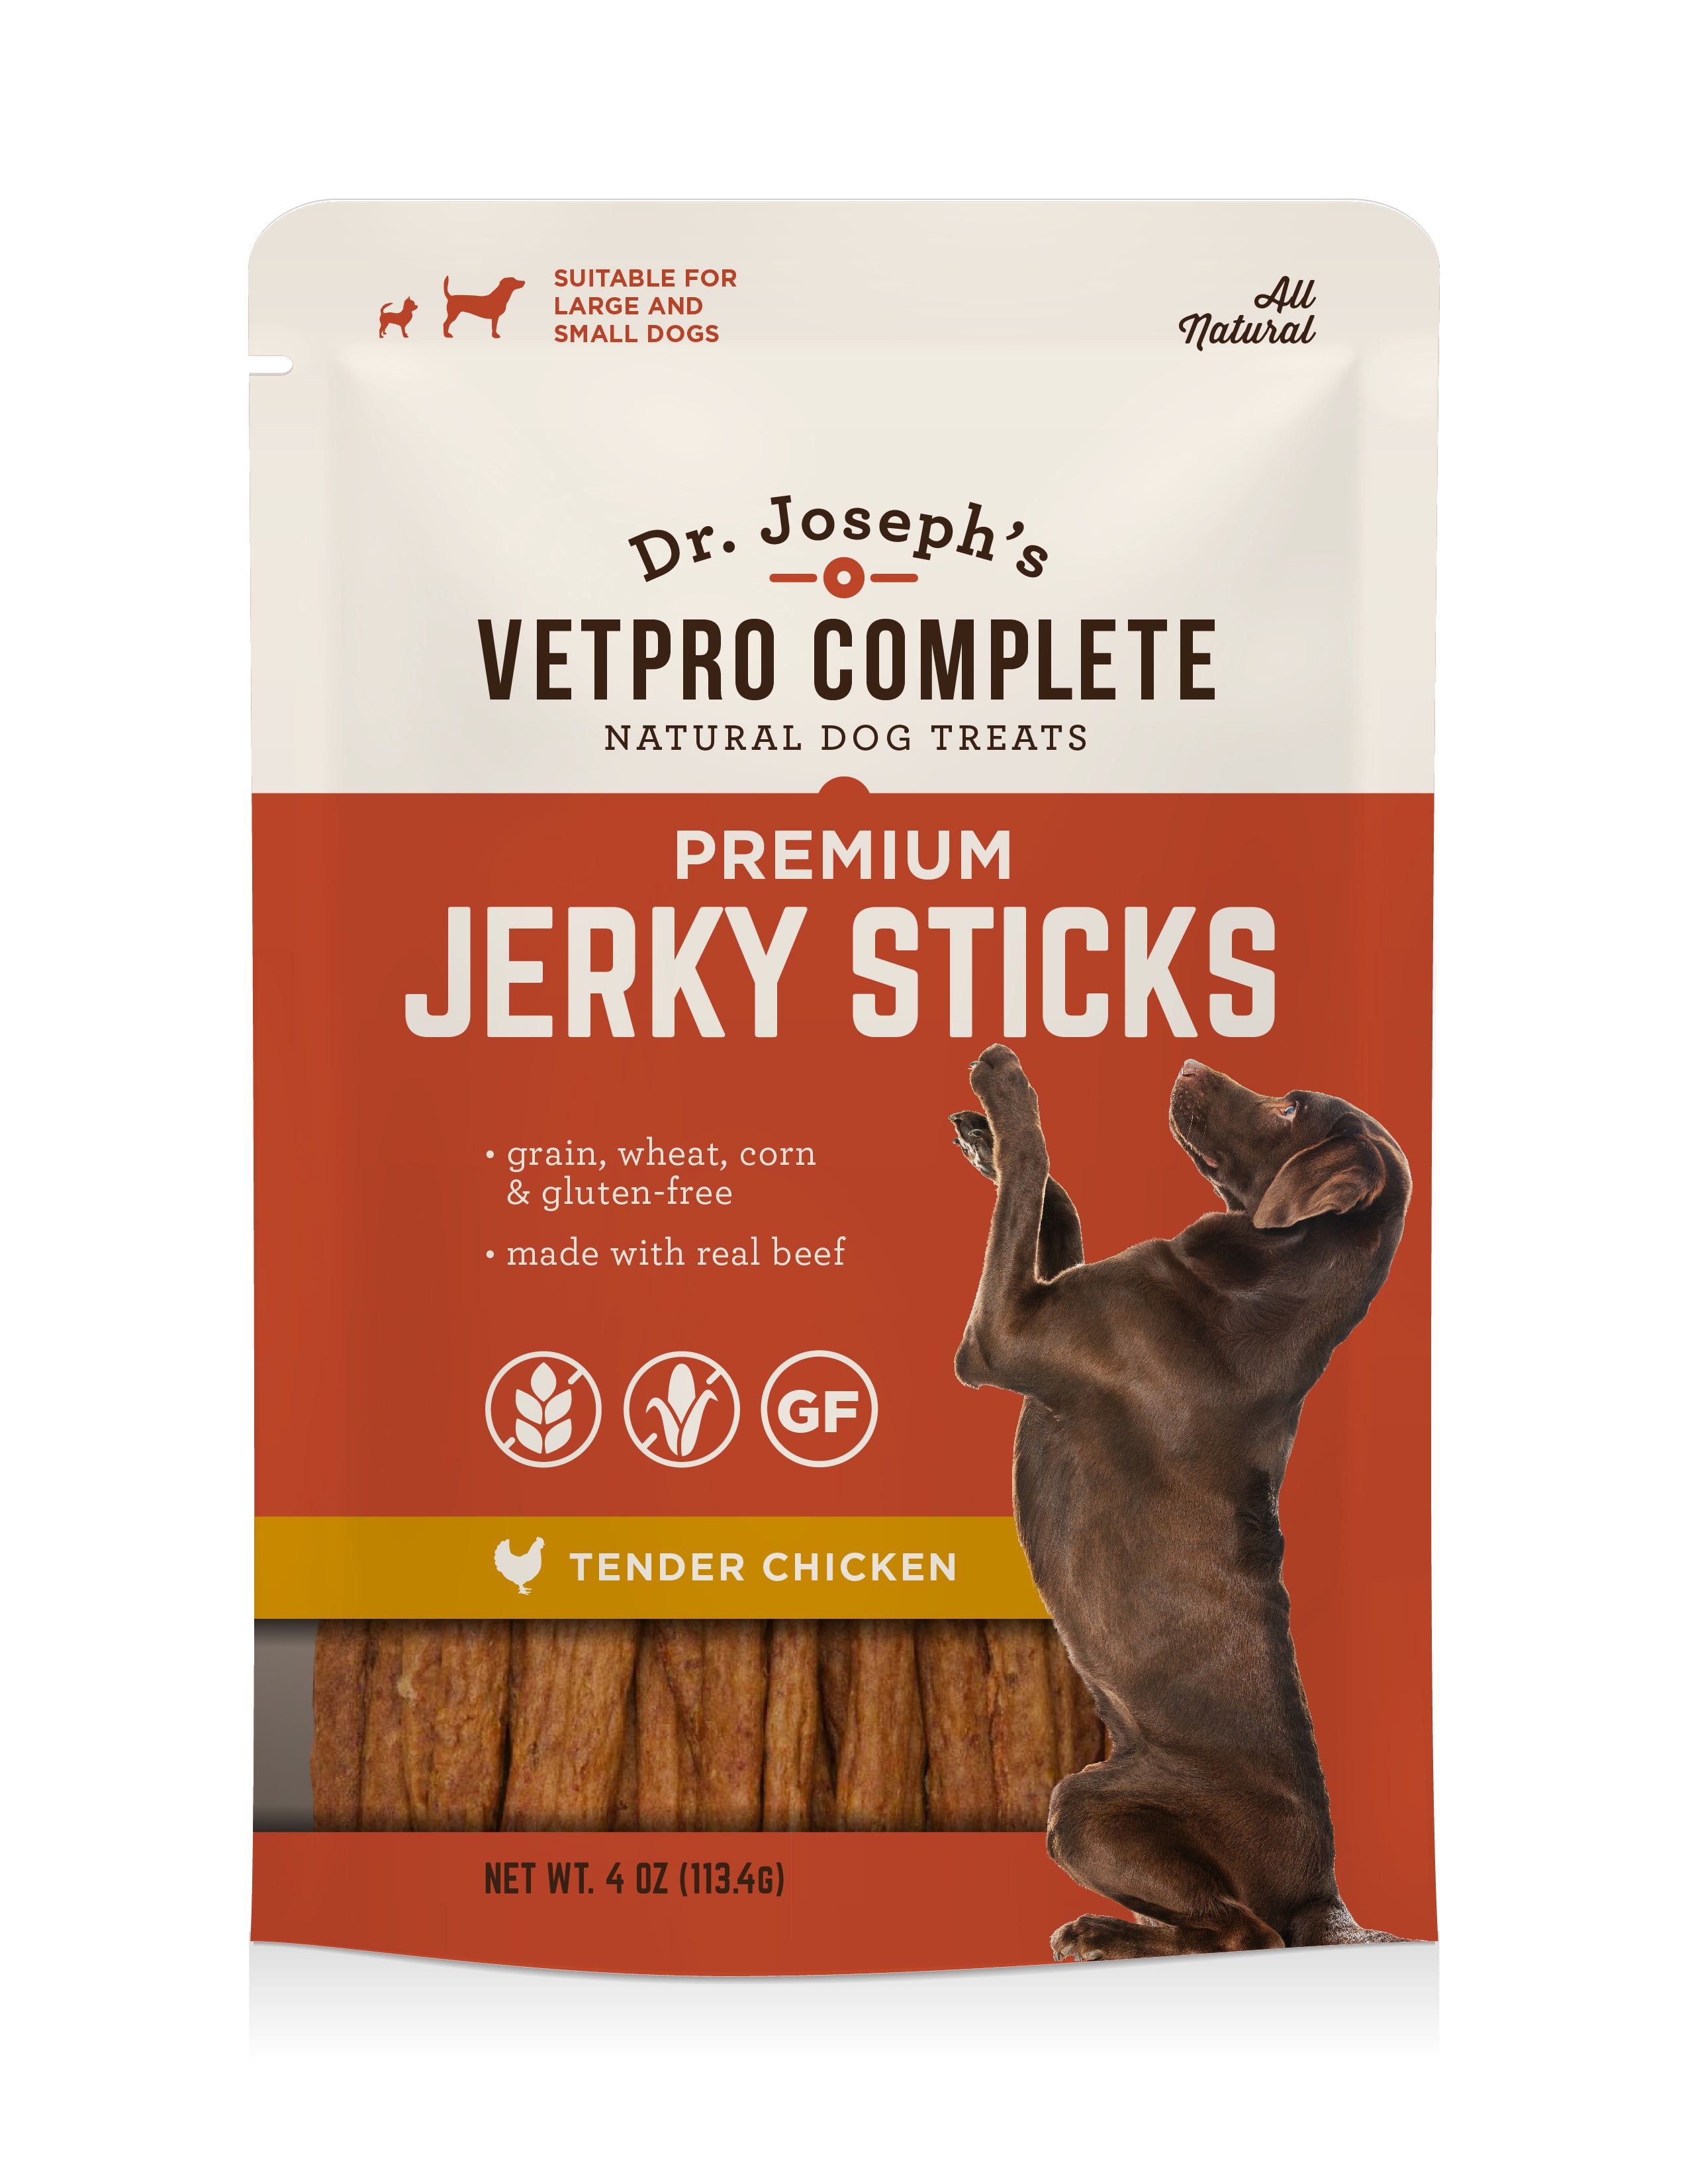 Dr Josephs Jerky Sticks for Dogs - Vetpro Complete